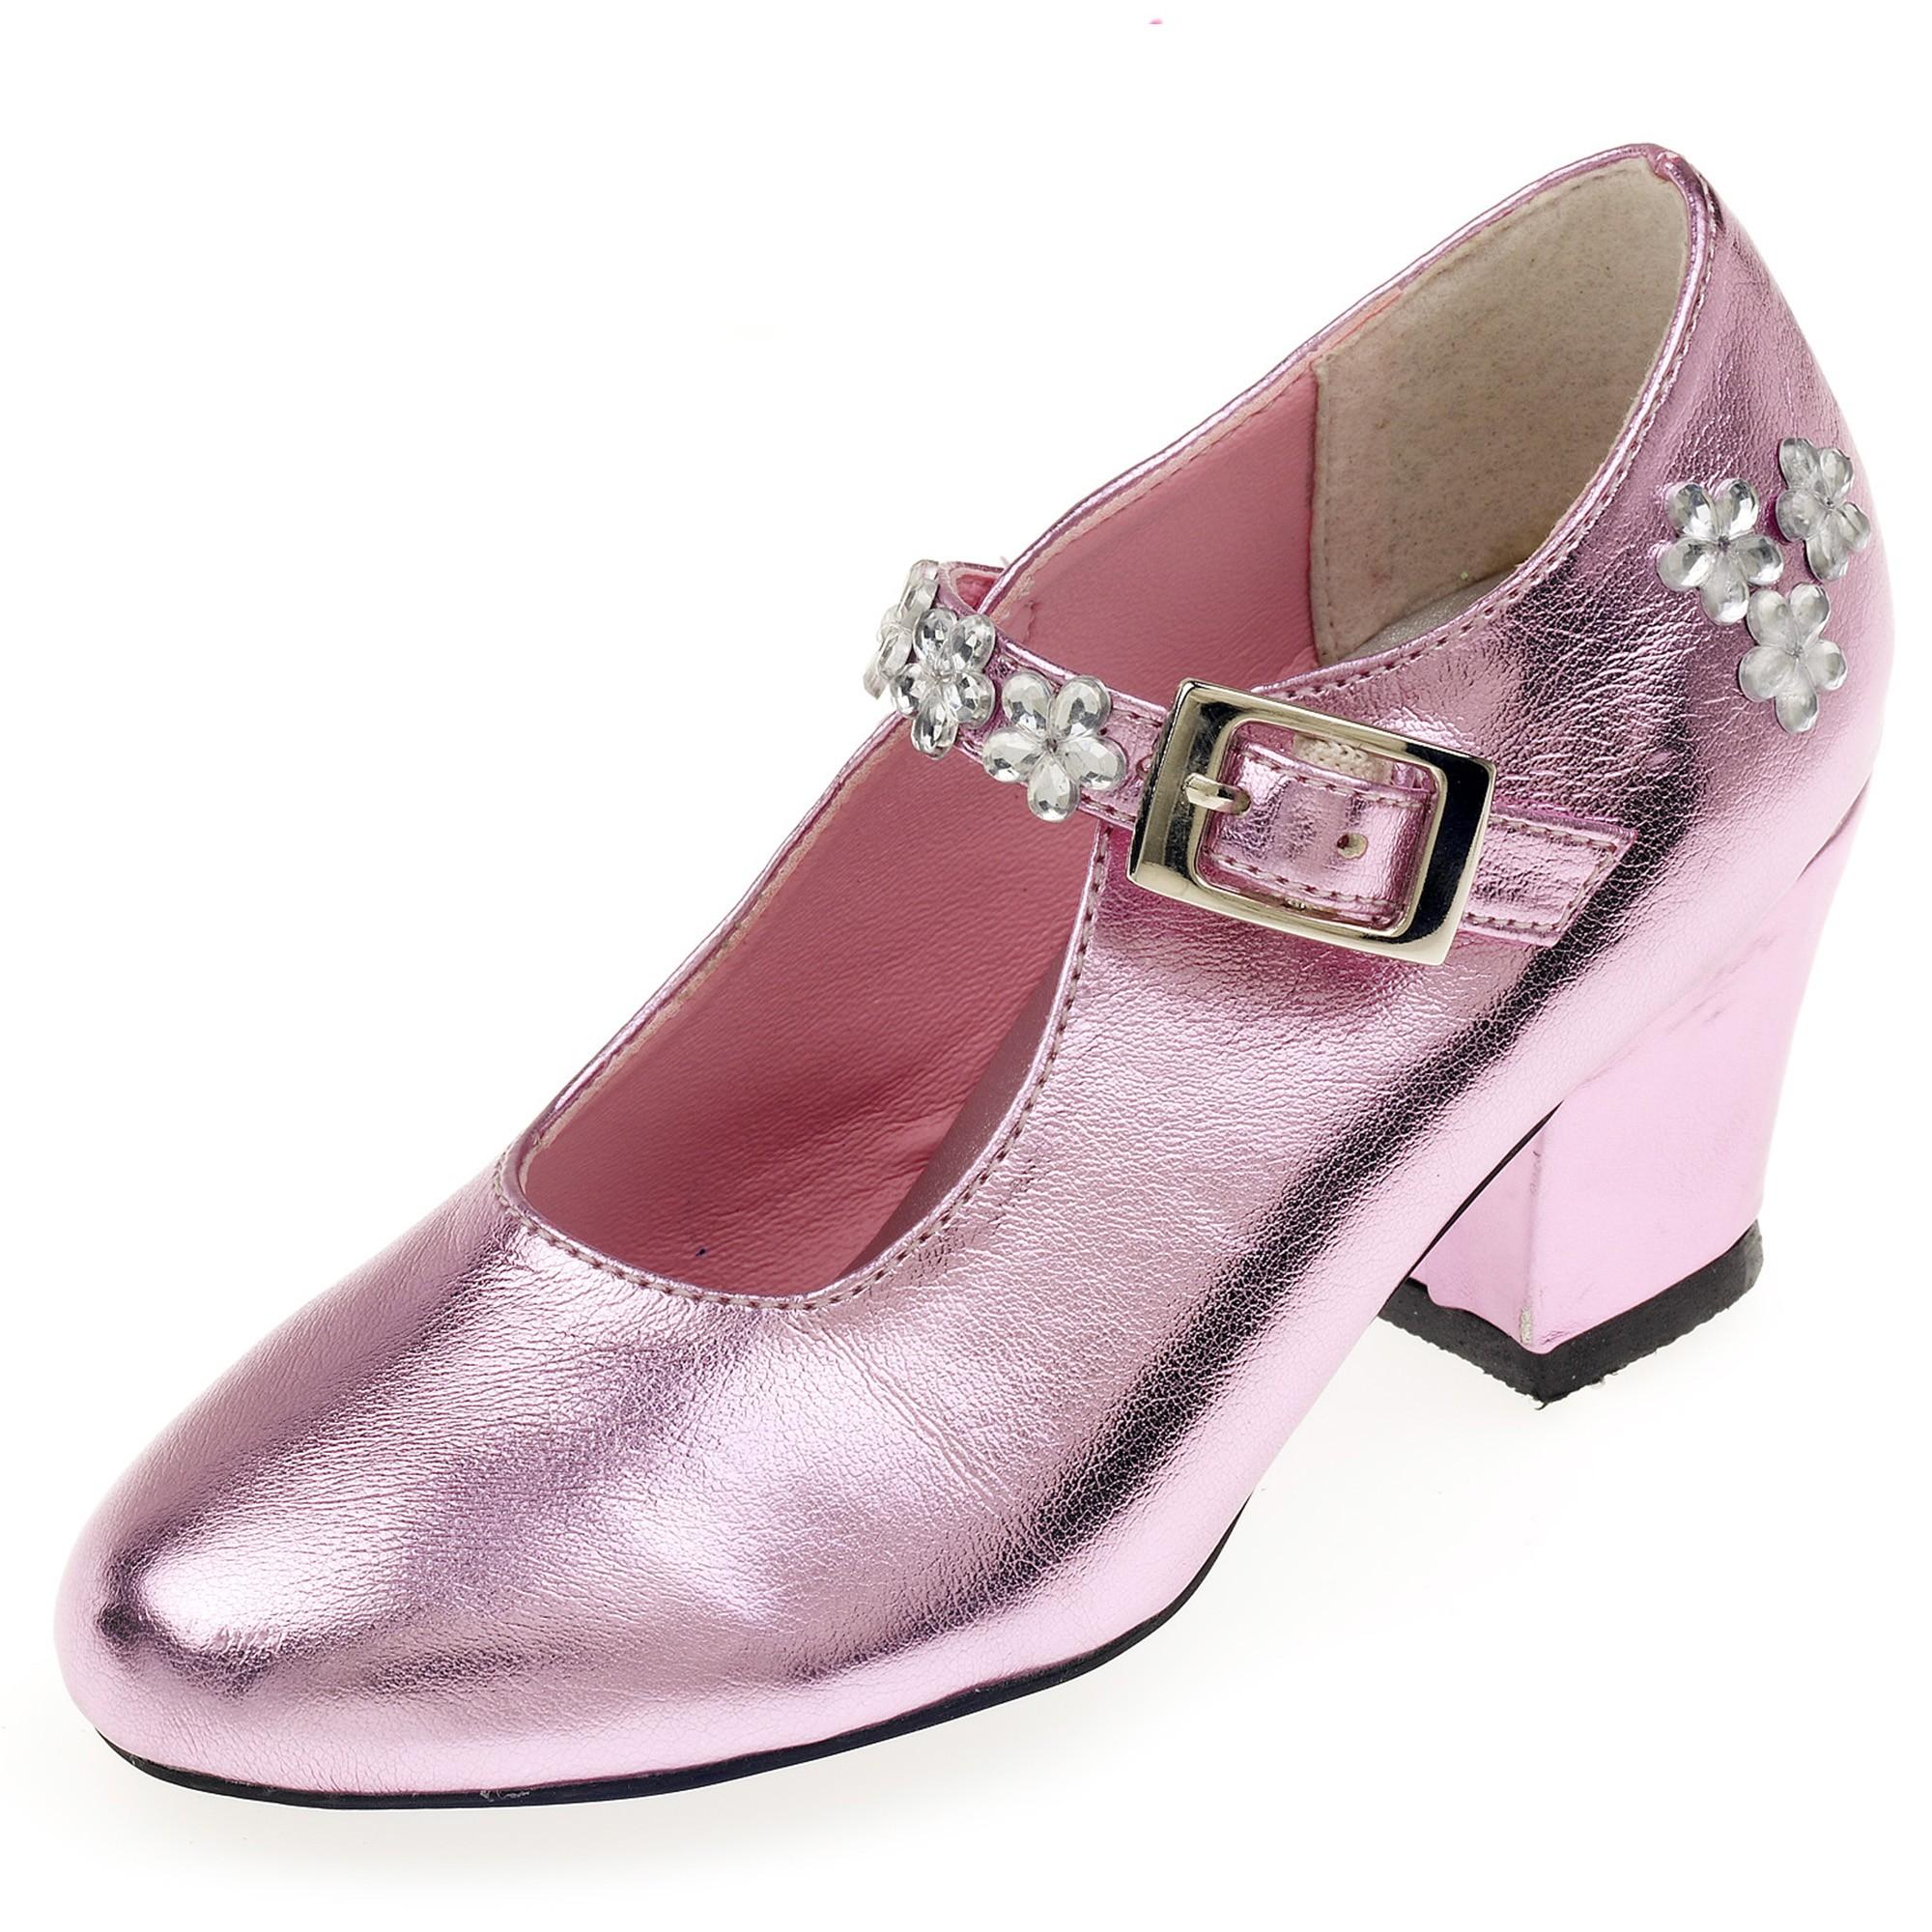 Souza - Schoentjes hoge hak Madeleine, roze metallic, mt 28 (1 paar)